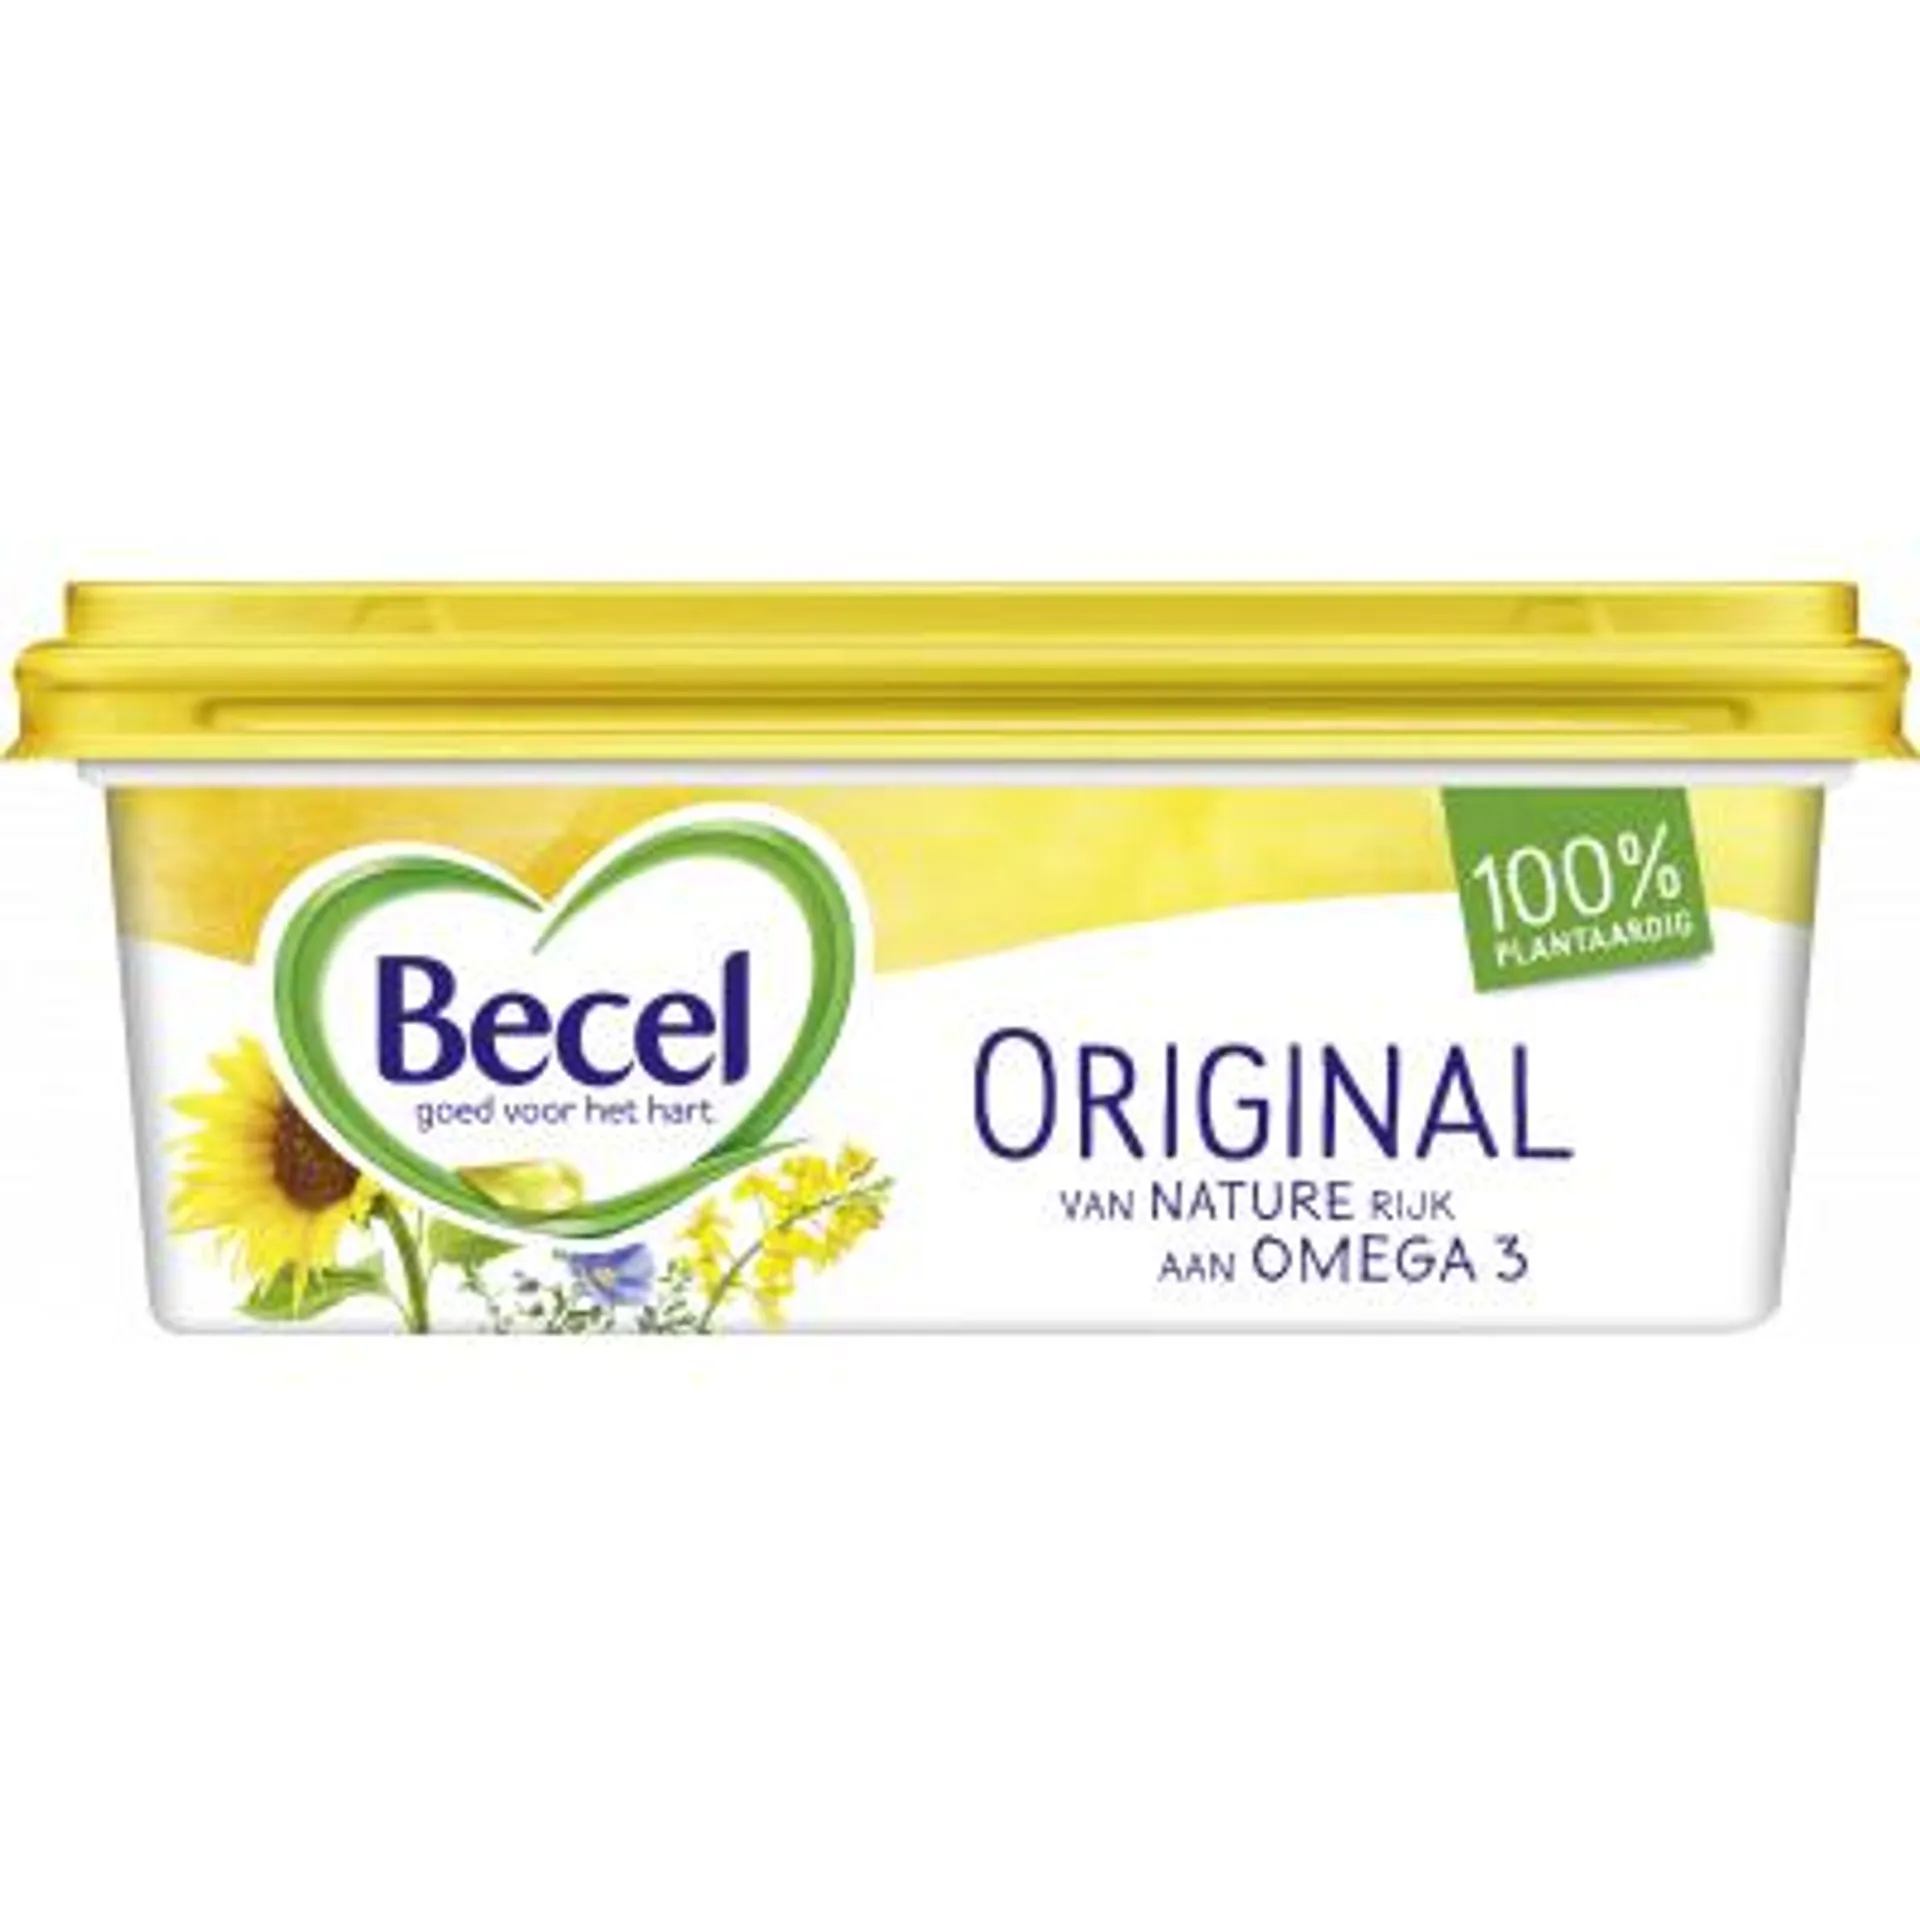 Becel Original kuip